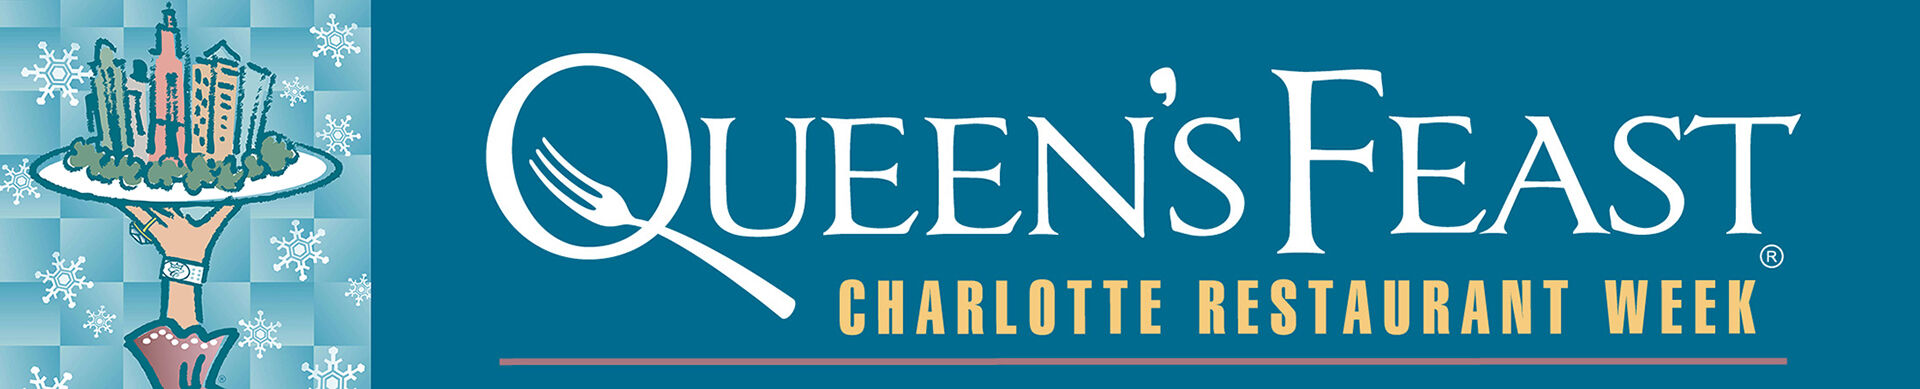 Image of Queen's Feast Logo